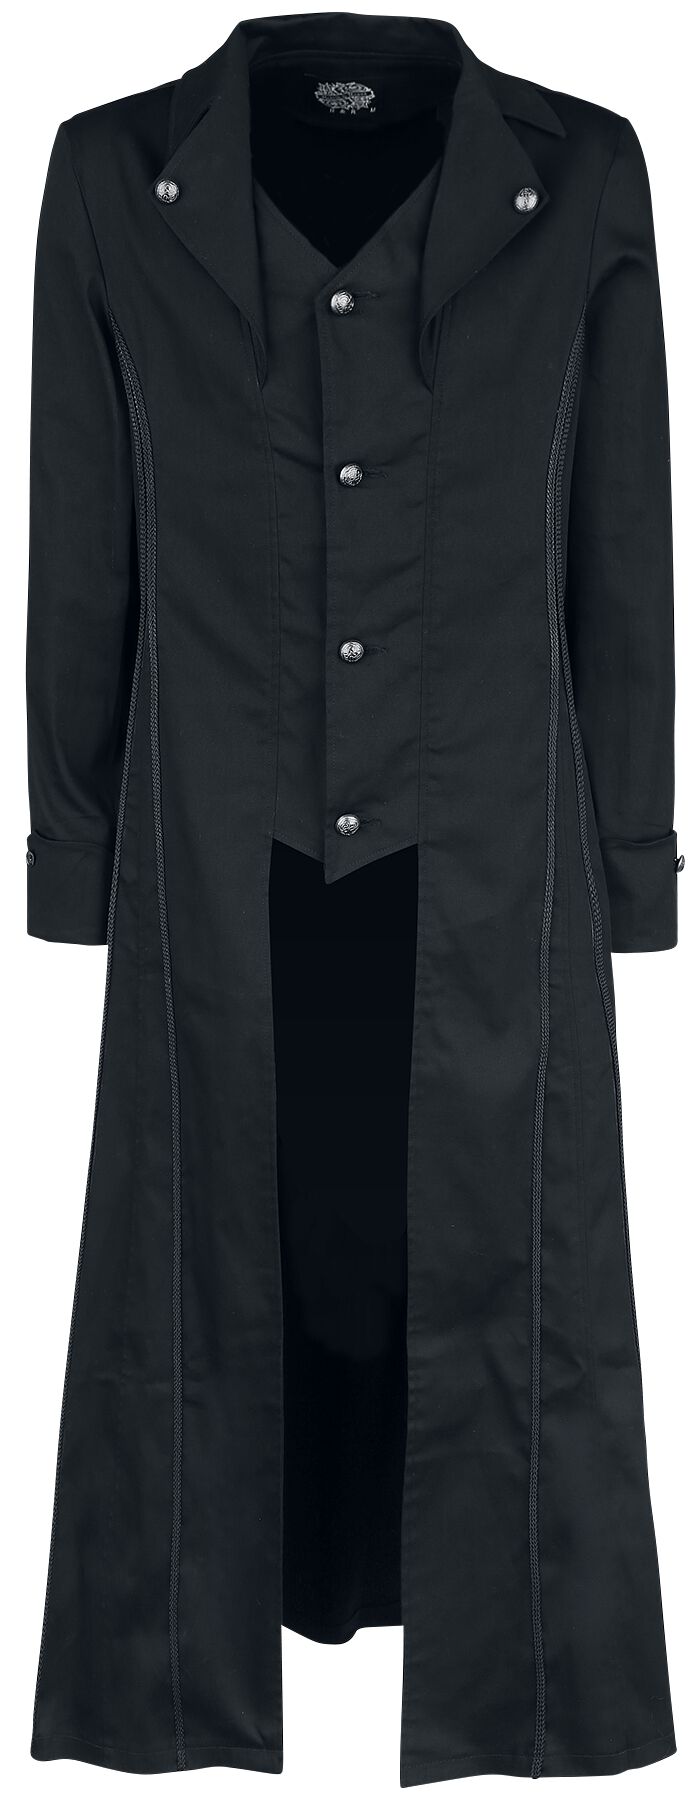 H&R London - Gothic Militärmantel - Black Classic Coat - S bis XXL - für Männer - Größe S - schwarz